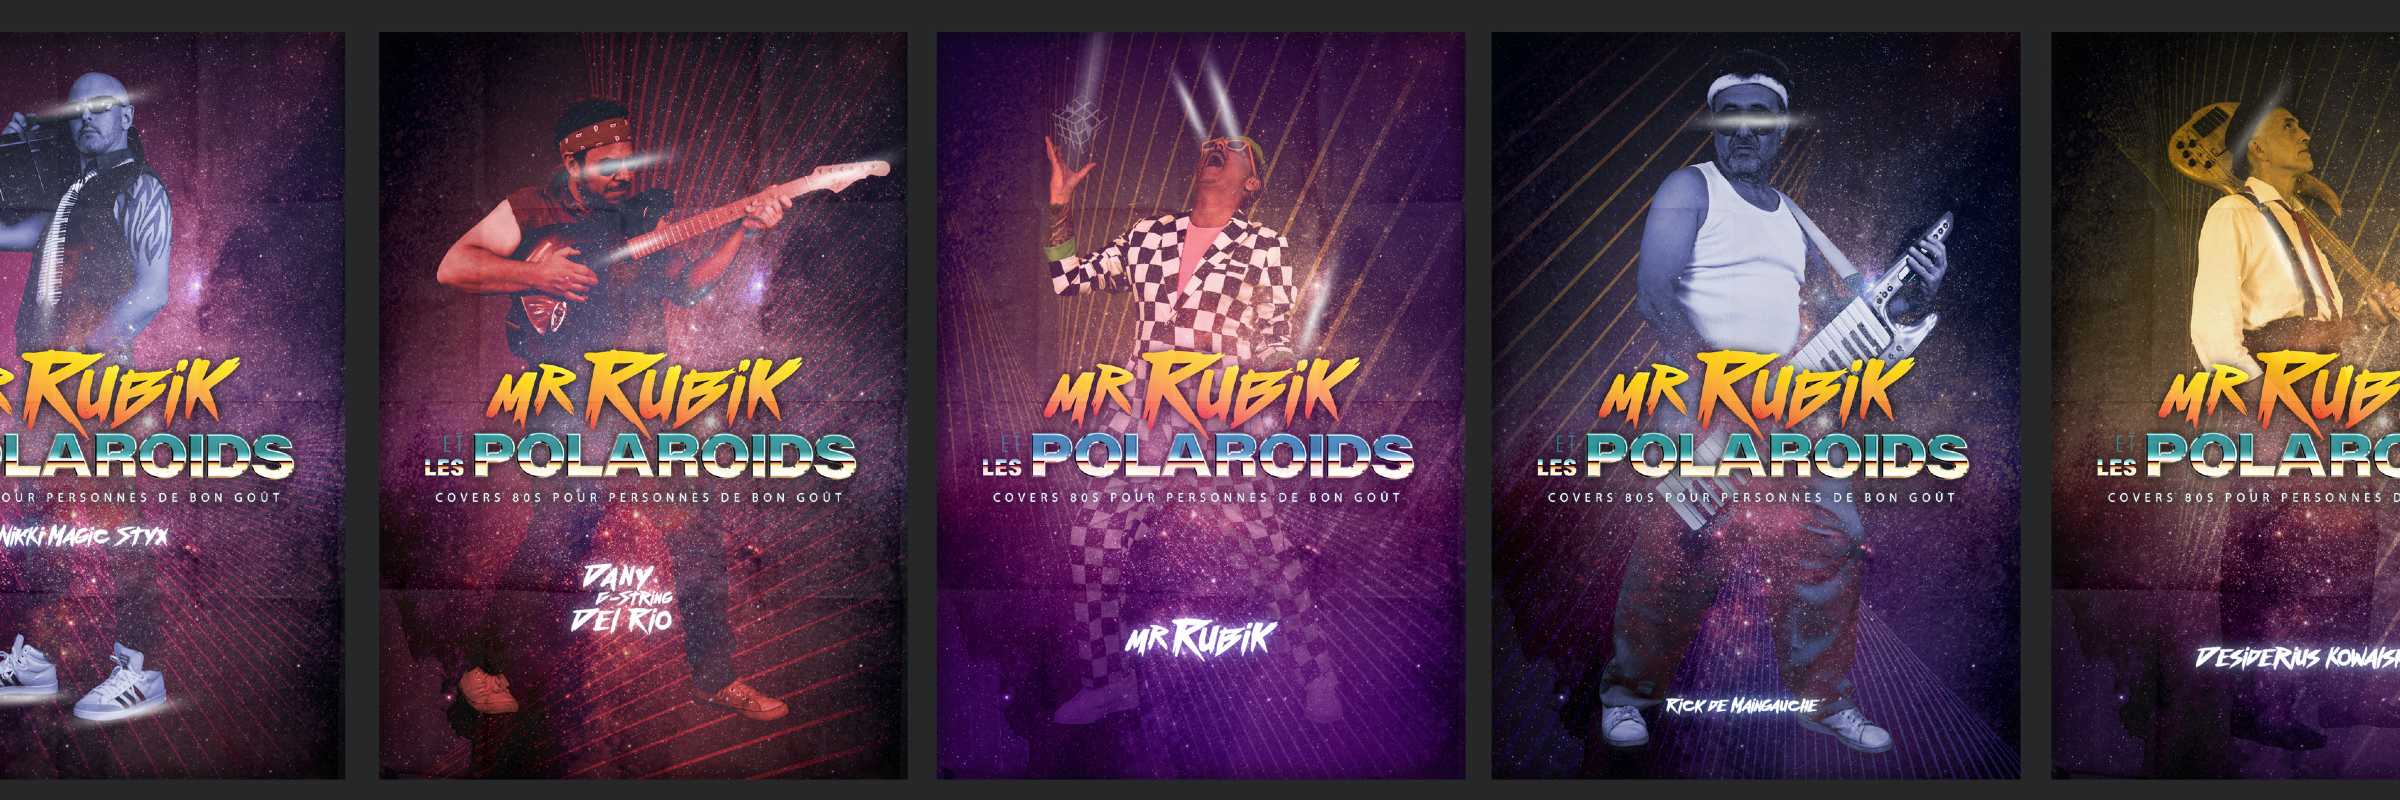 Mr Rubik et les Polaroïds, groupe de musique Pop en représentation à Haute Garonne - photo de couverture